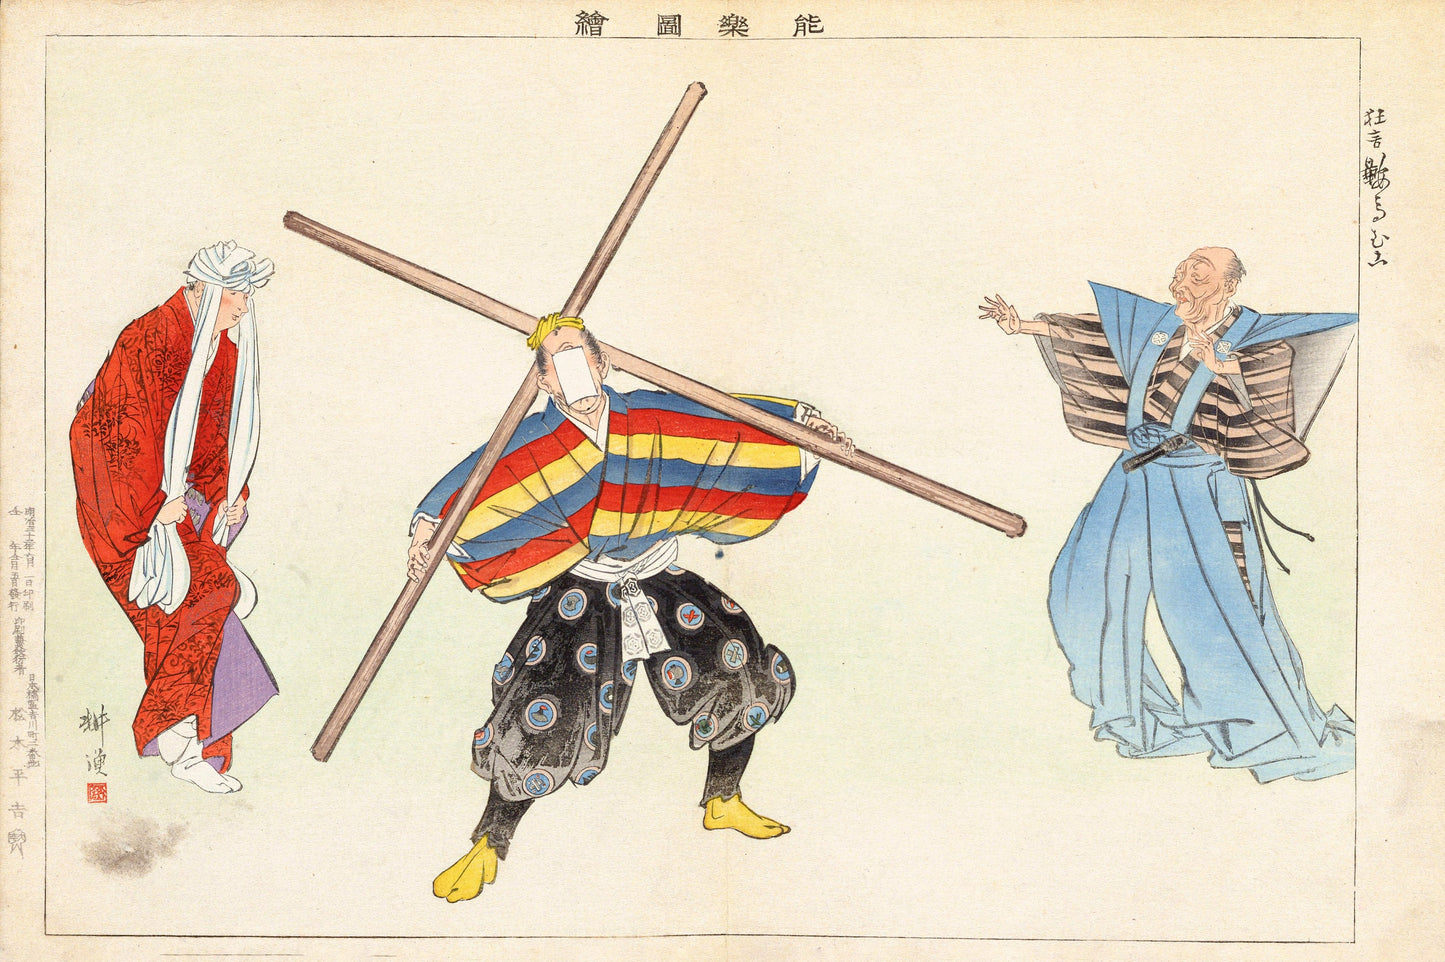 Kogyo Tsukioka Nogaku Zue Japanese Meiji Era Woodblock Prints [21 Images]